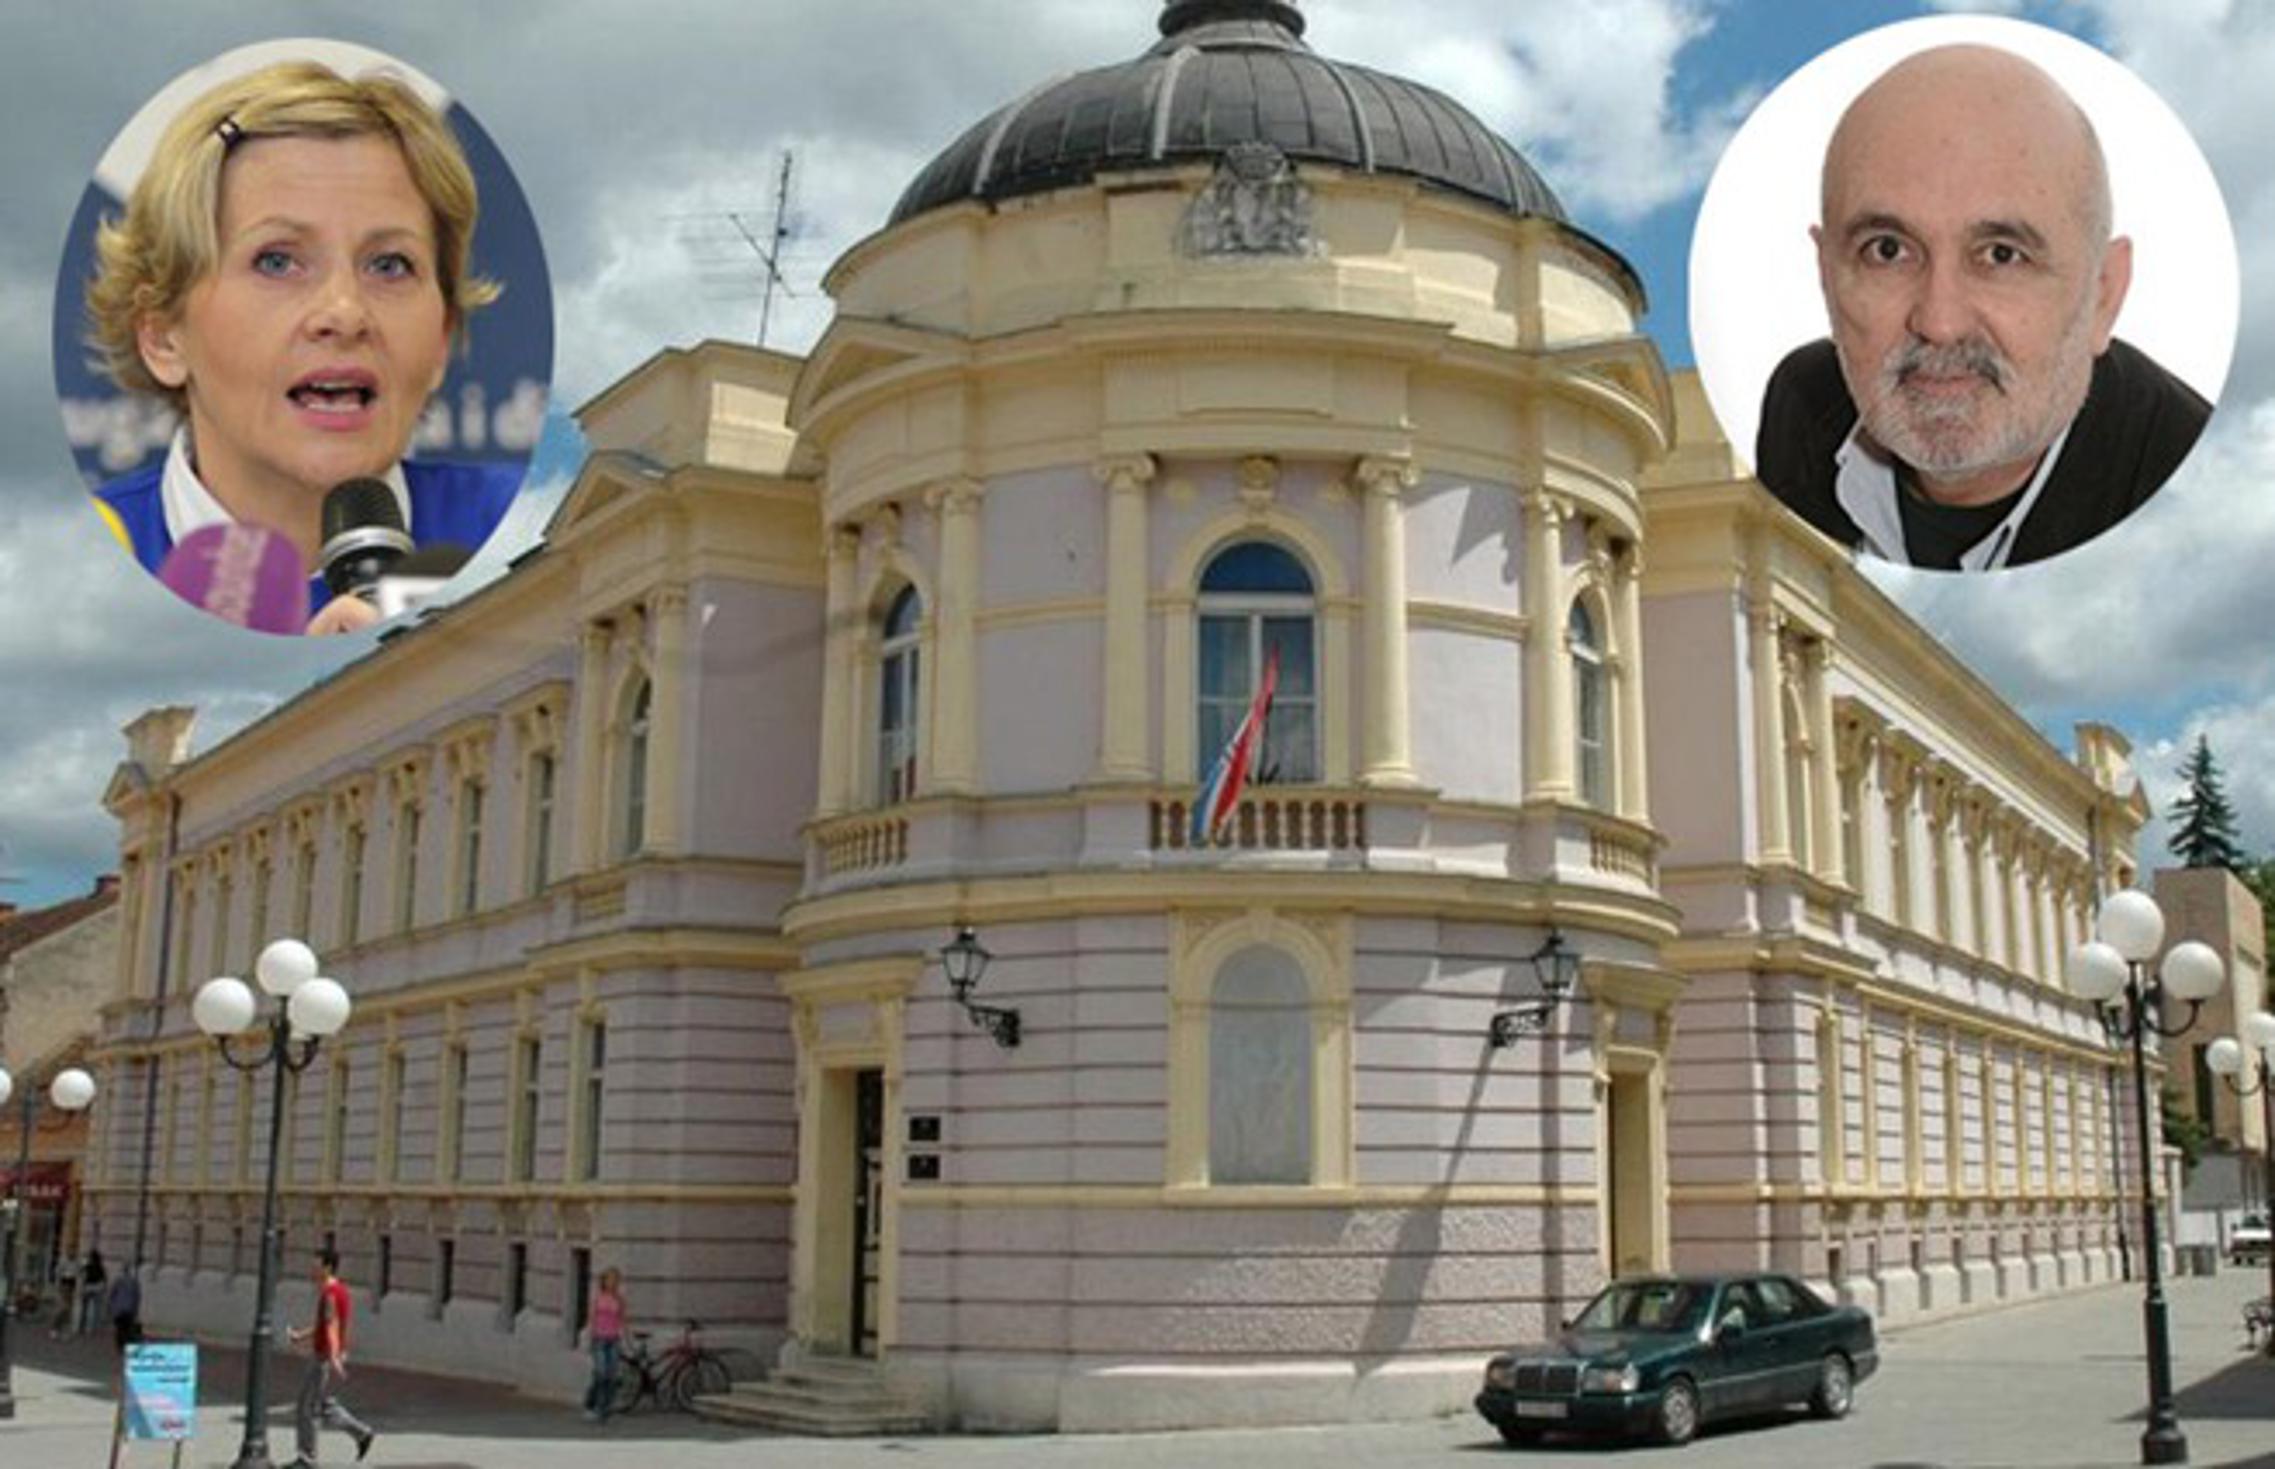 Đurđa Aleksić / Siladi i Jerko Zovak, na ponovno suđenje zbog uvrede krivotvoritelja